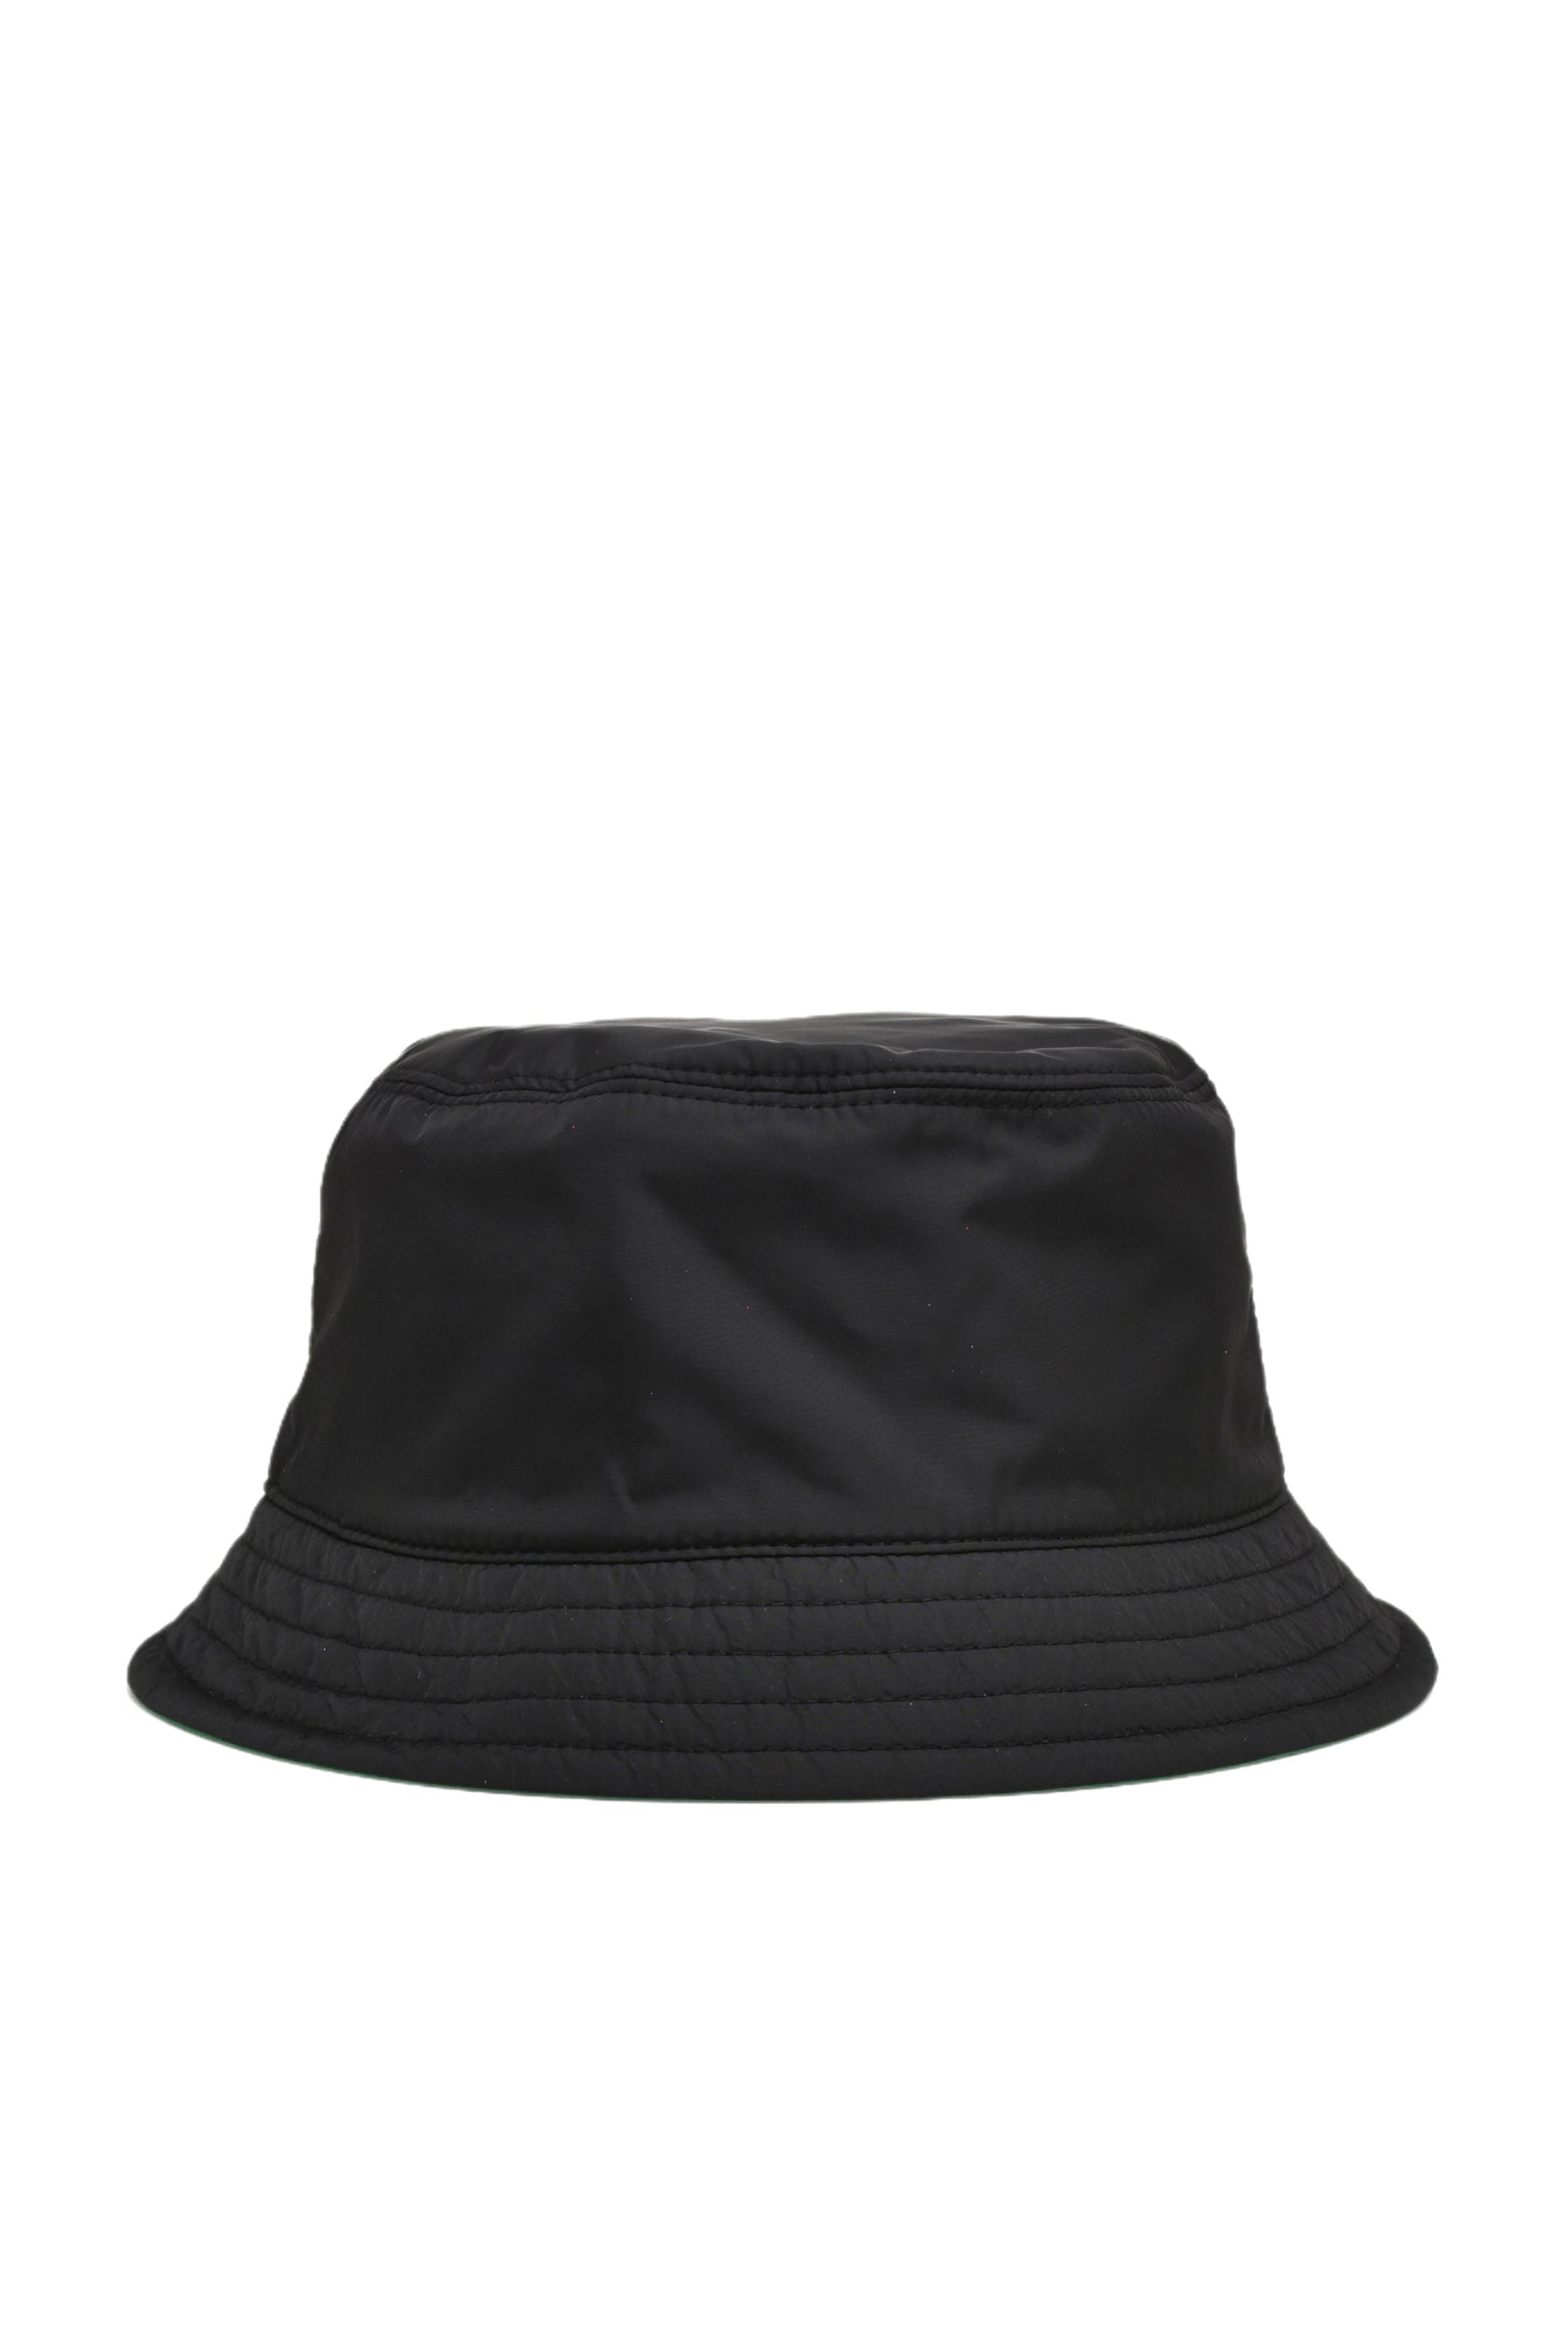 BUCKET HAT/BLK (S99)